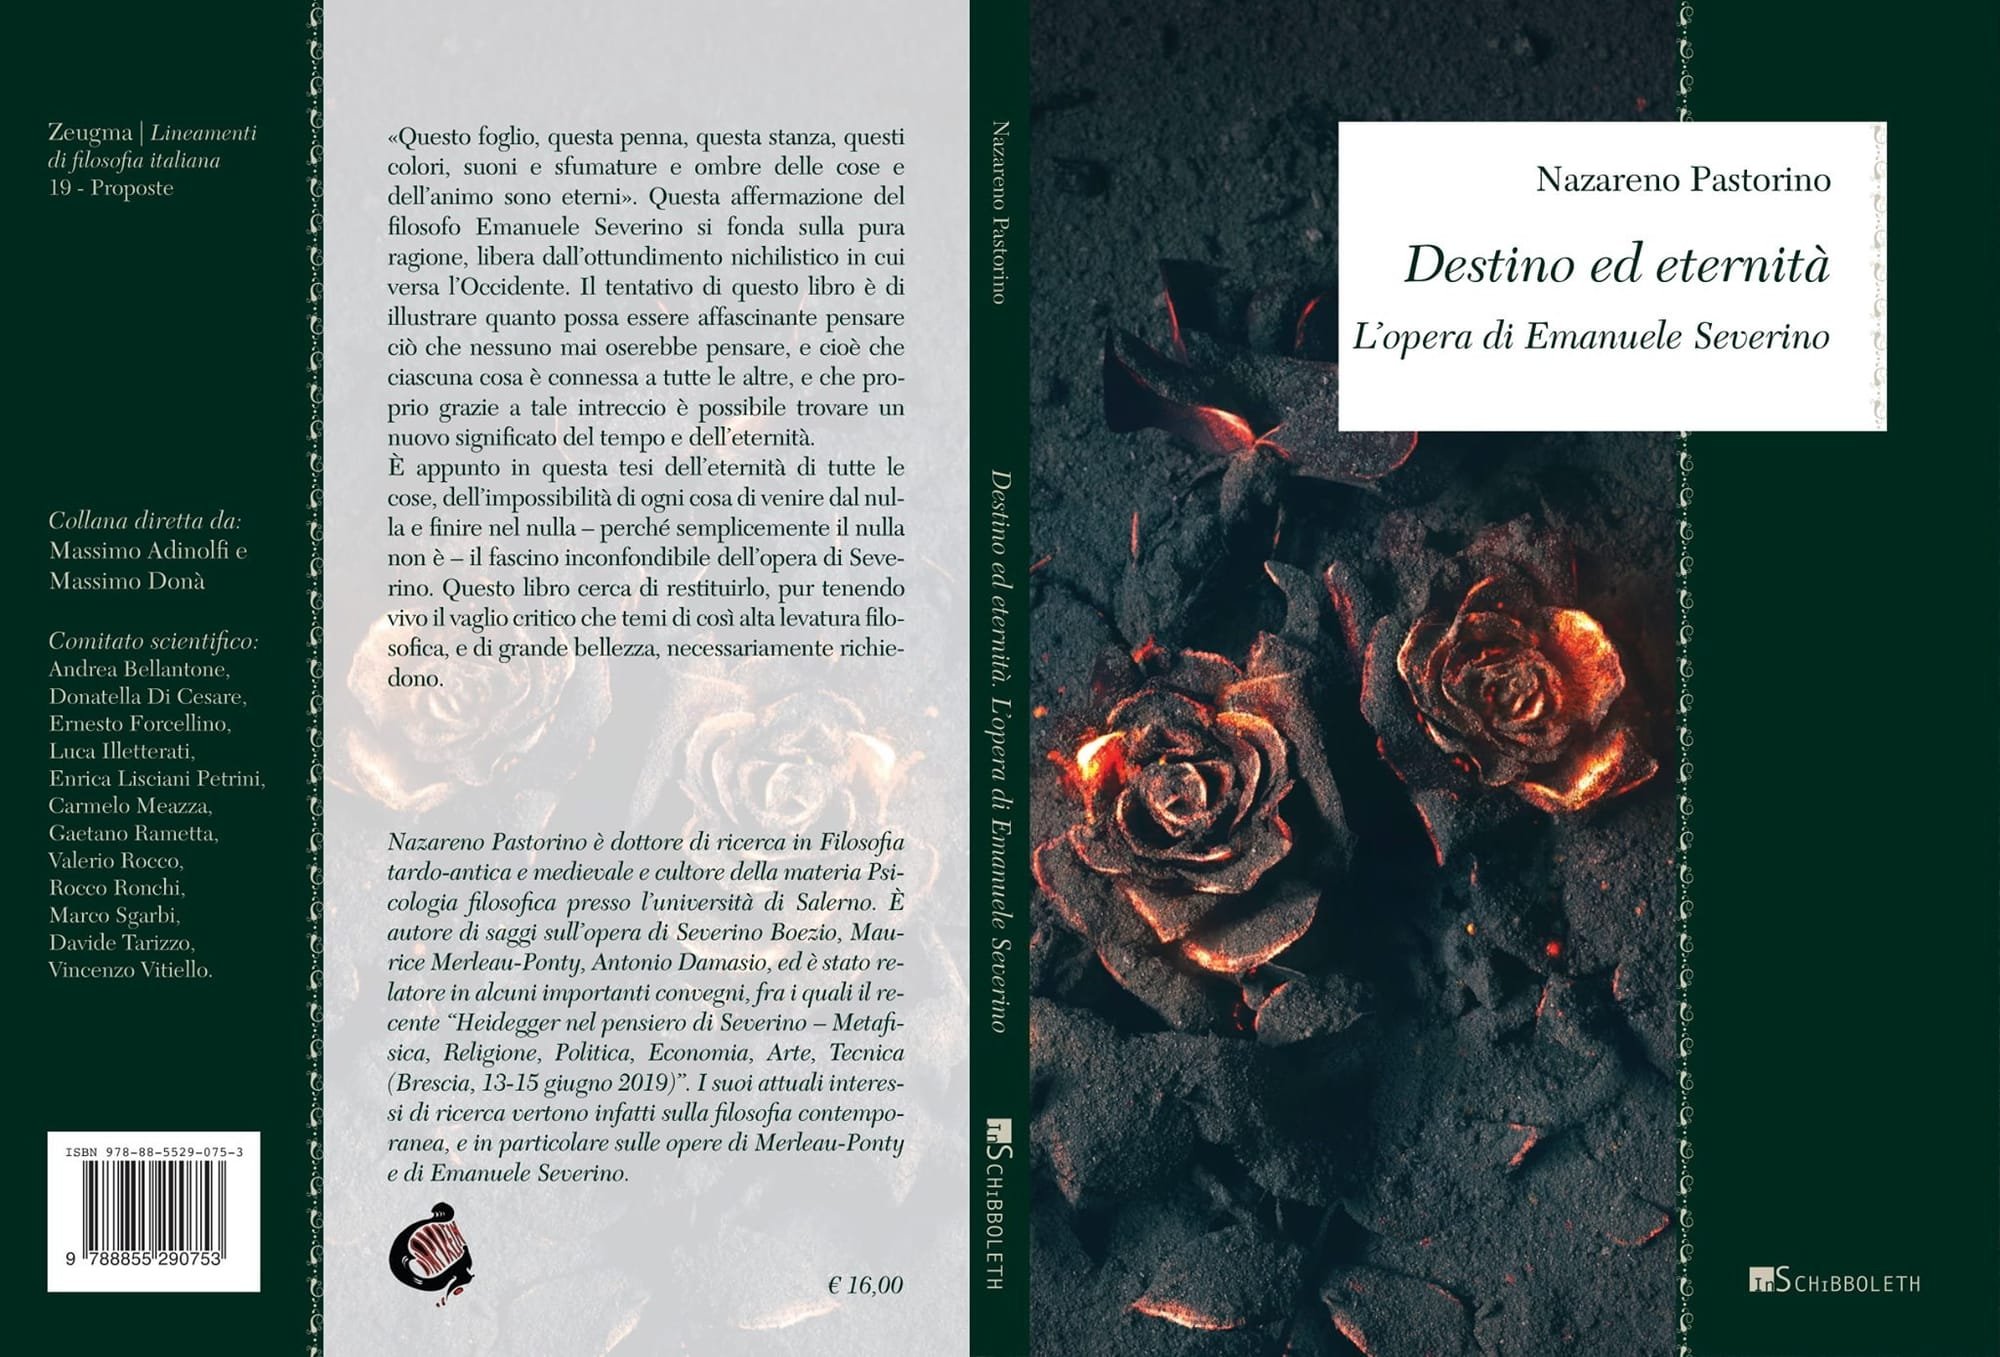 1. Destino ed eternità - L'opera di Emanuele Severino, Inschibboleth, Roma 2020